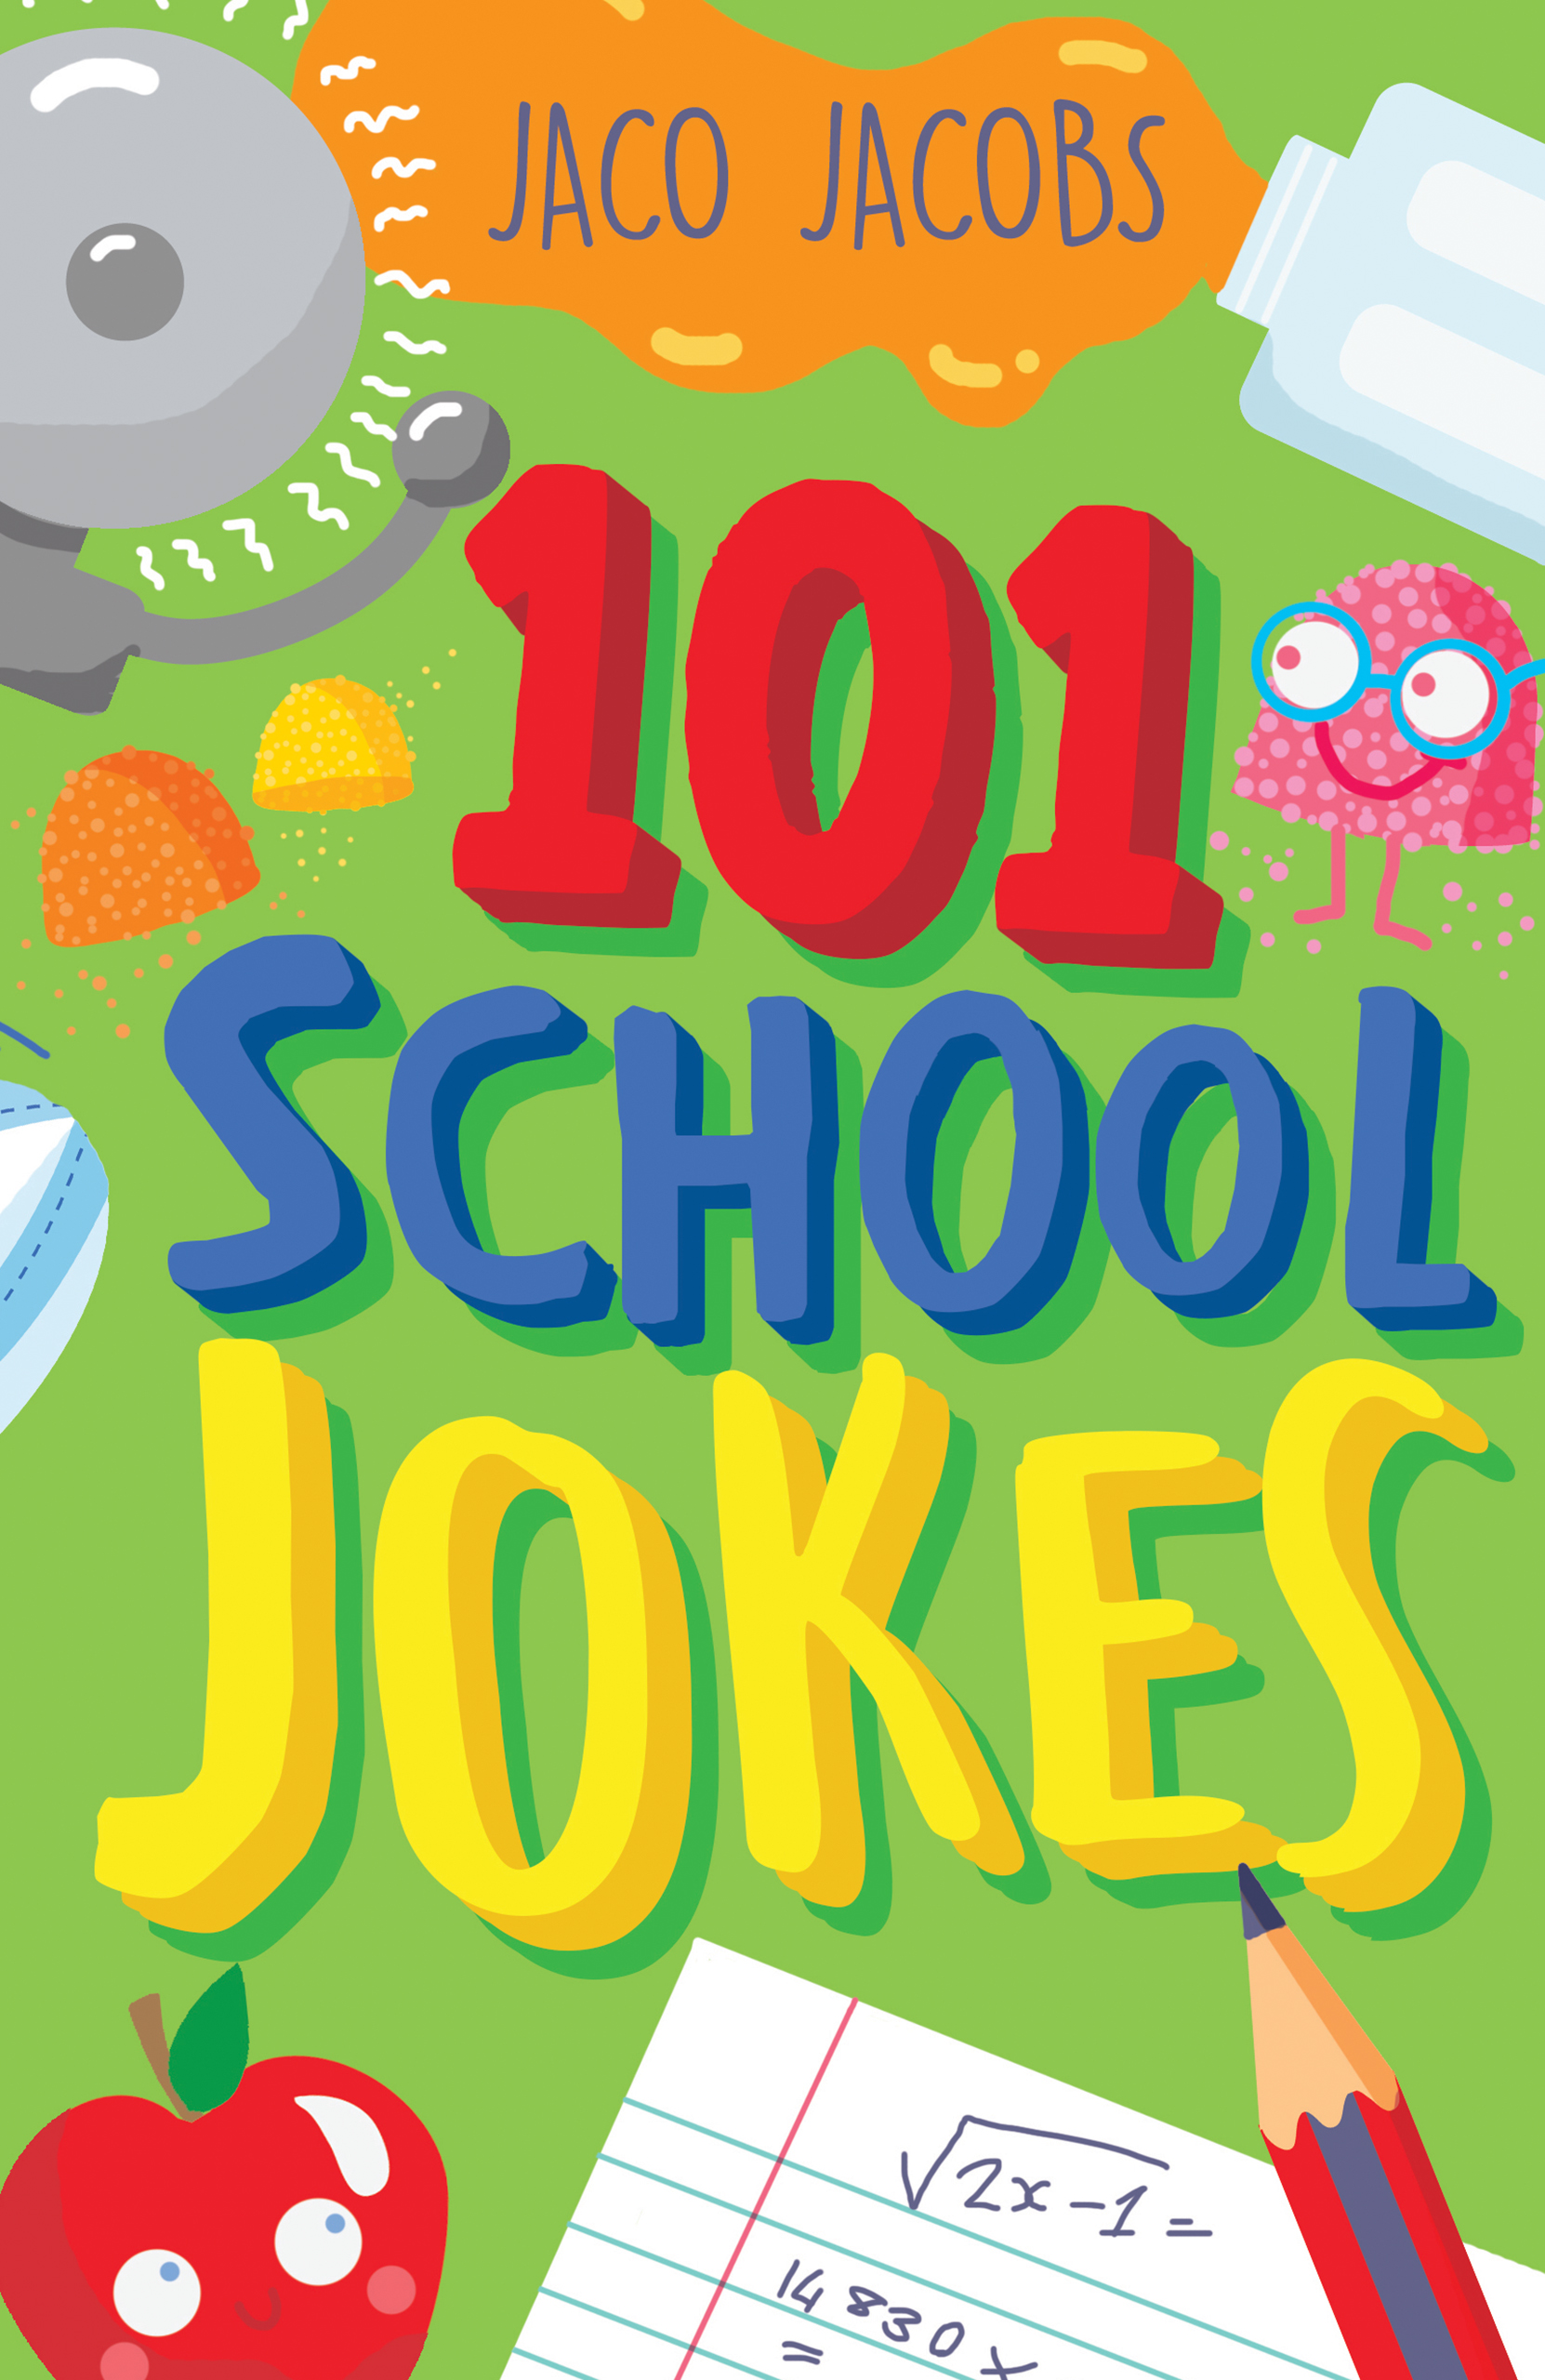 101 School Jokes